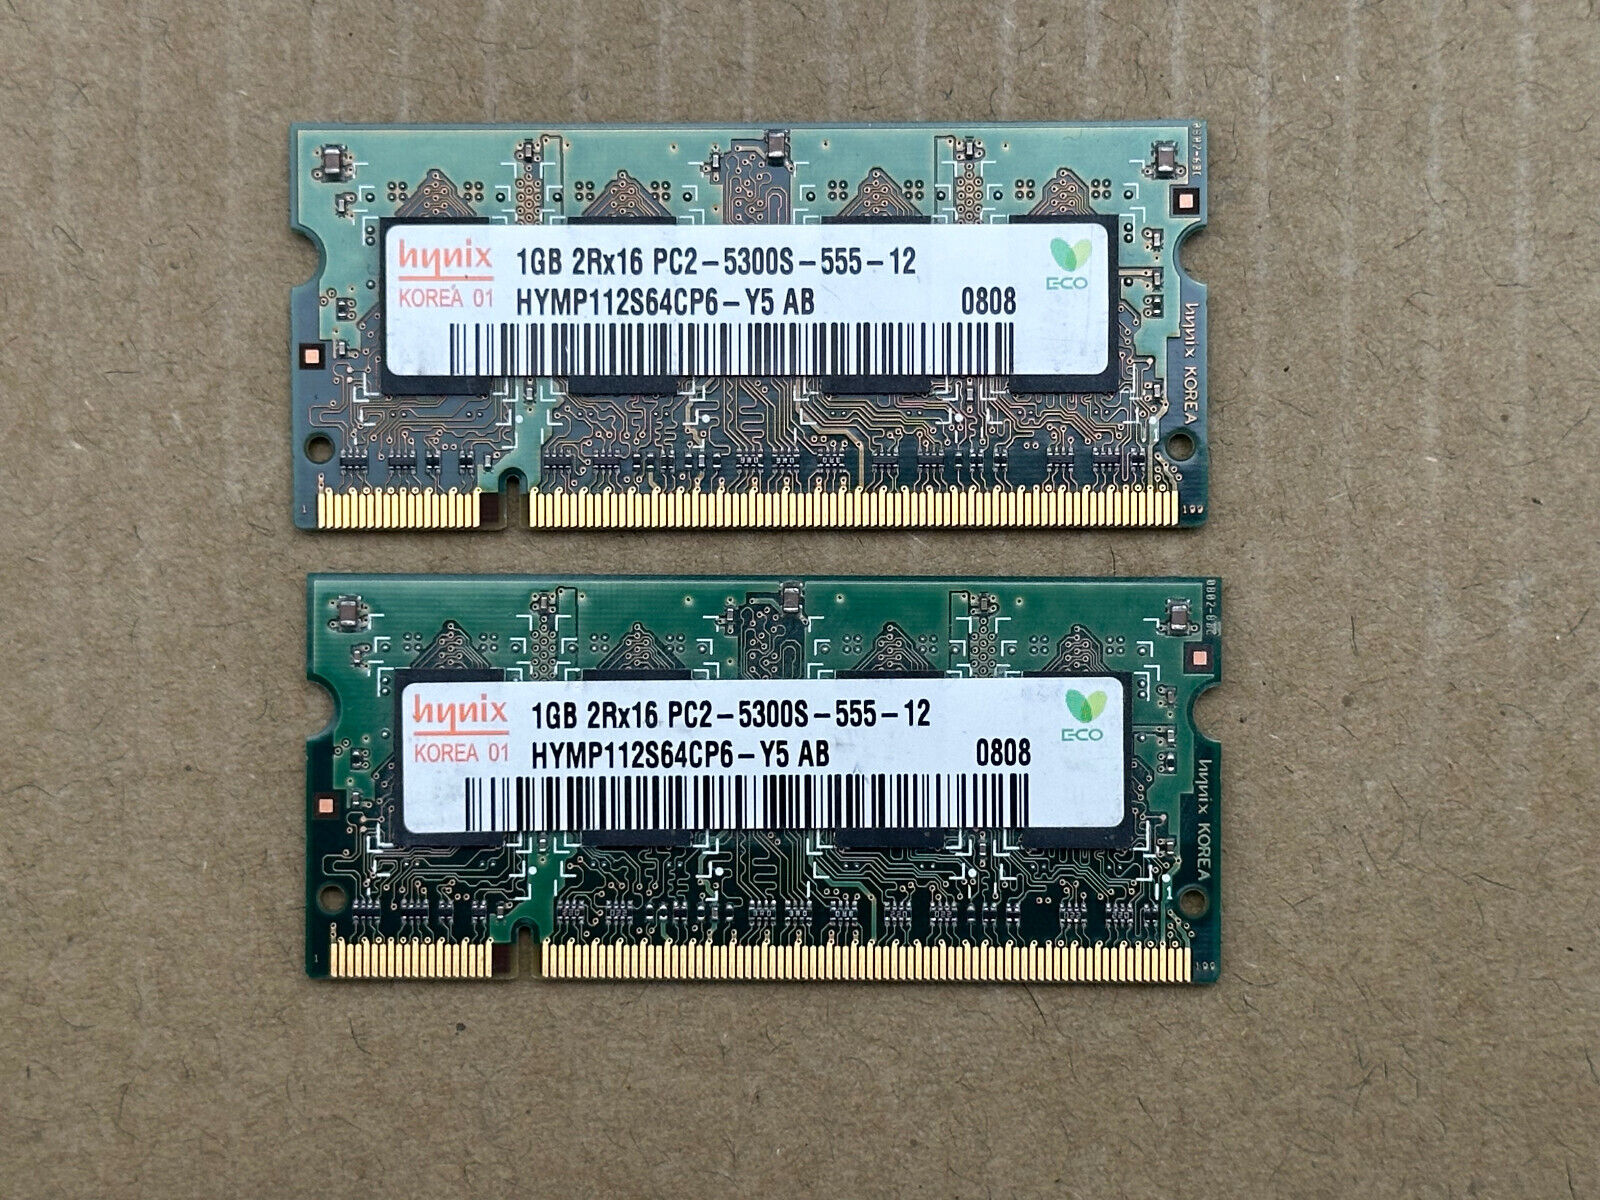 Hynix 2GB (2 of 1GB) 2Rx16 PC2–5300S-555-12 HYMP112S64C6-Y5 AB DDR2 RAM